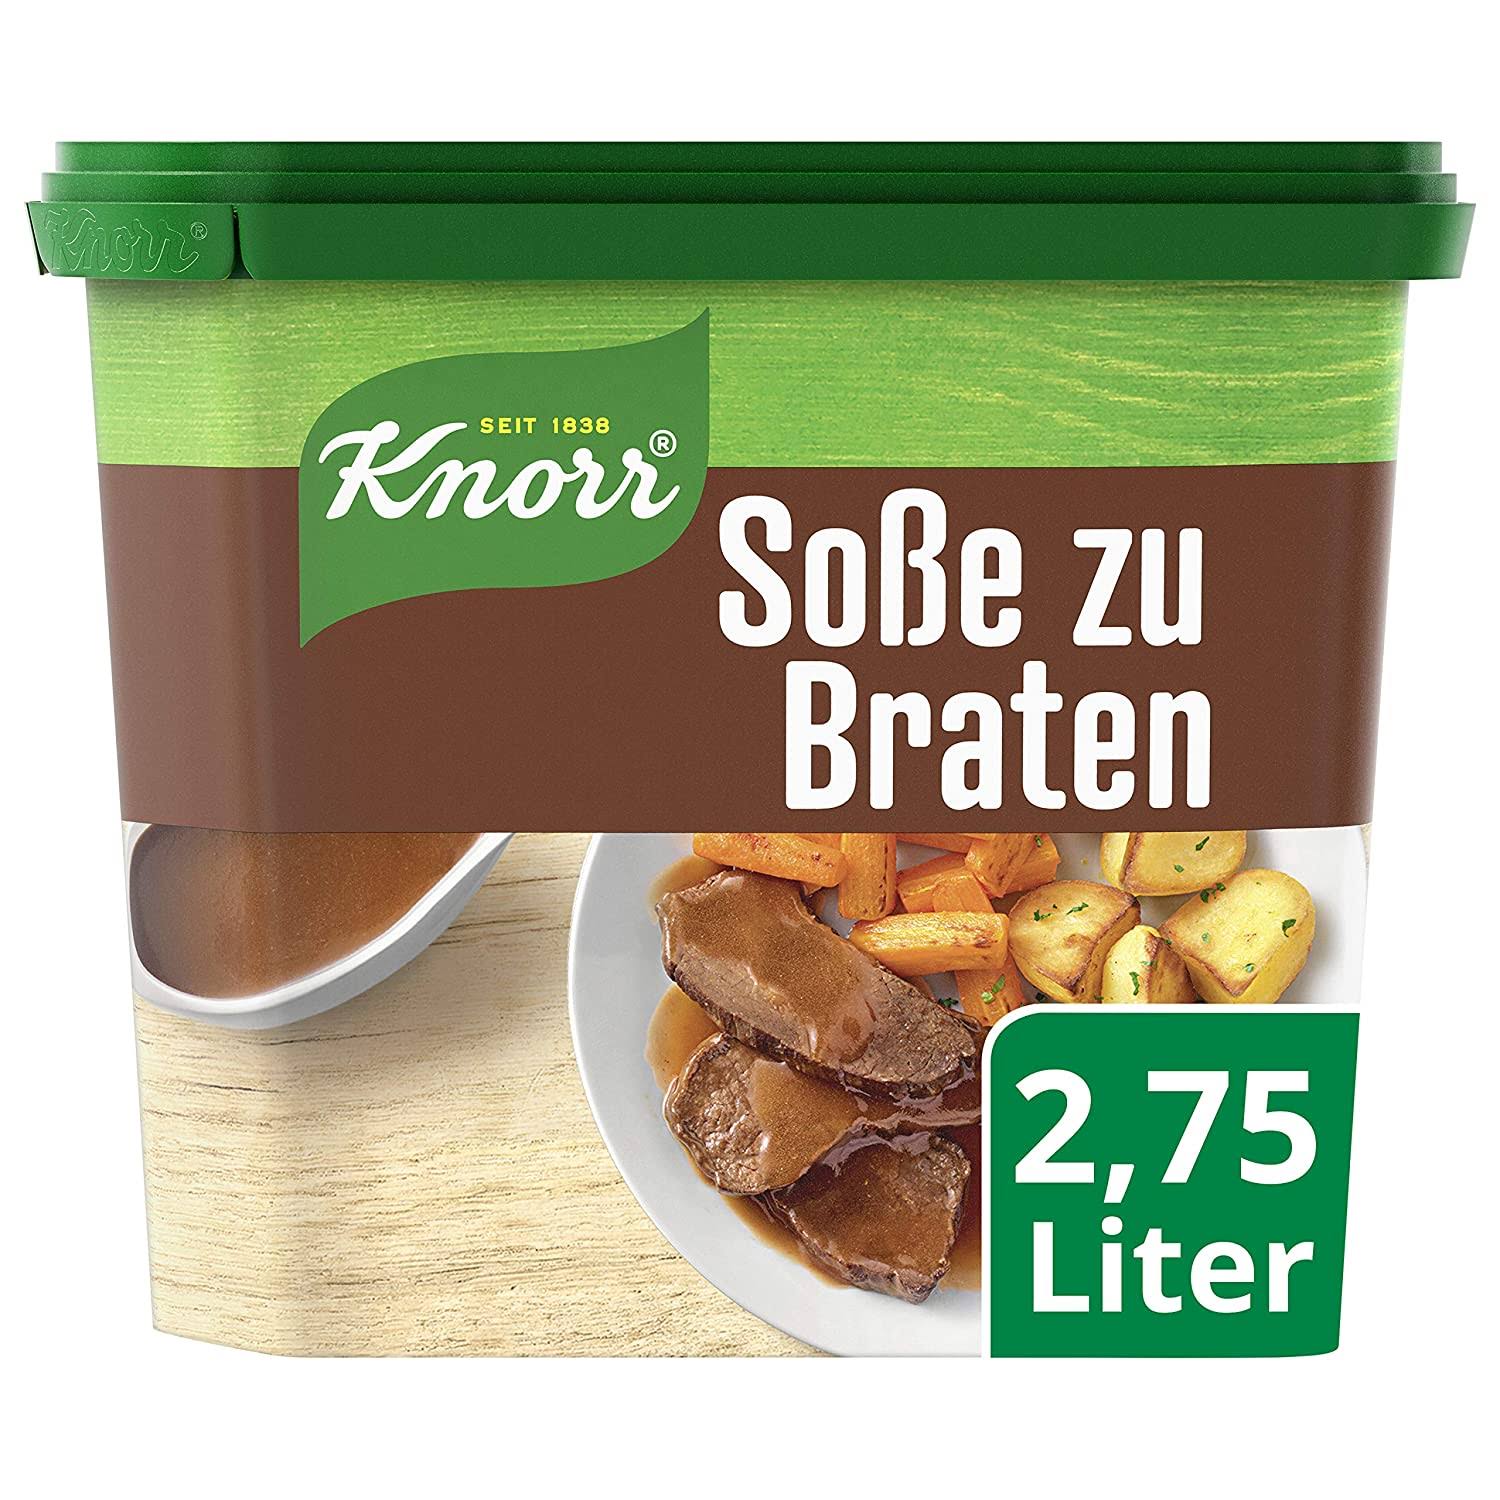 Knorr Roast Gravy ( Sosse zum Braten ) For 2.75 Liter